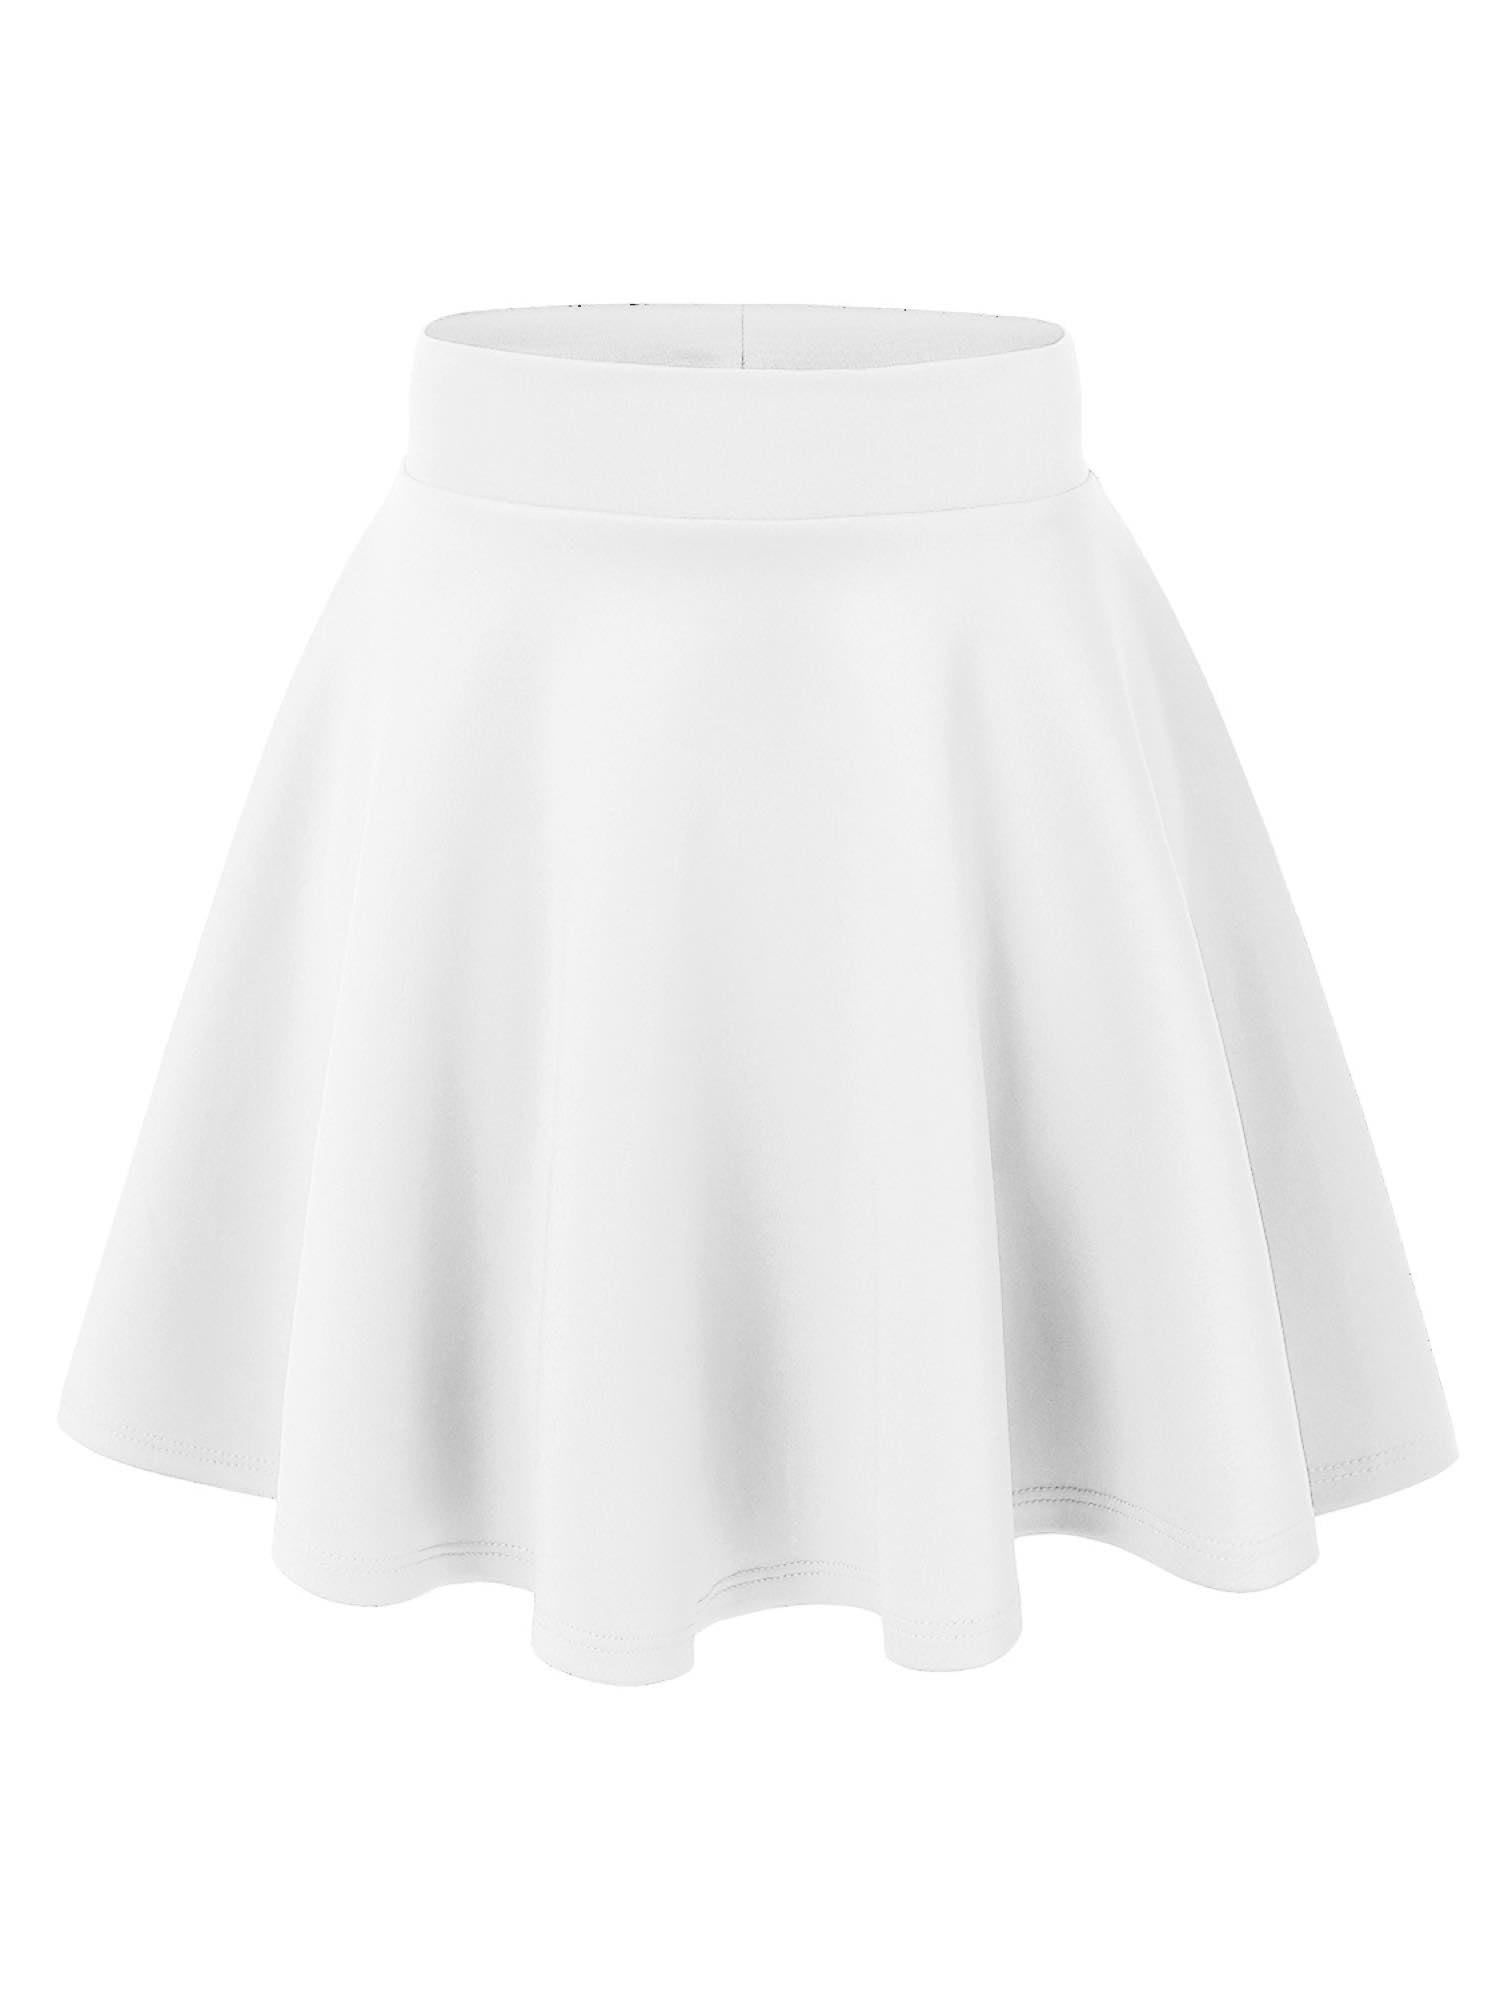 MBJ WB669 Womens Basic Versatile Strechy Flare Skater Skirt S WHITE ...